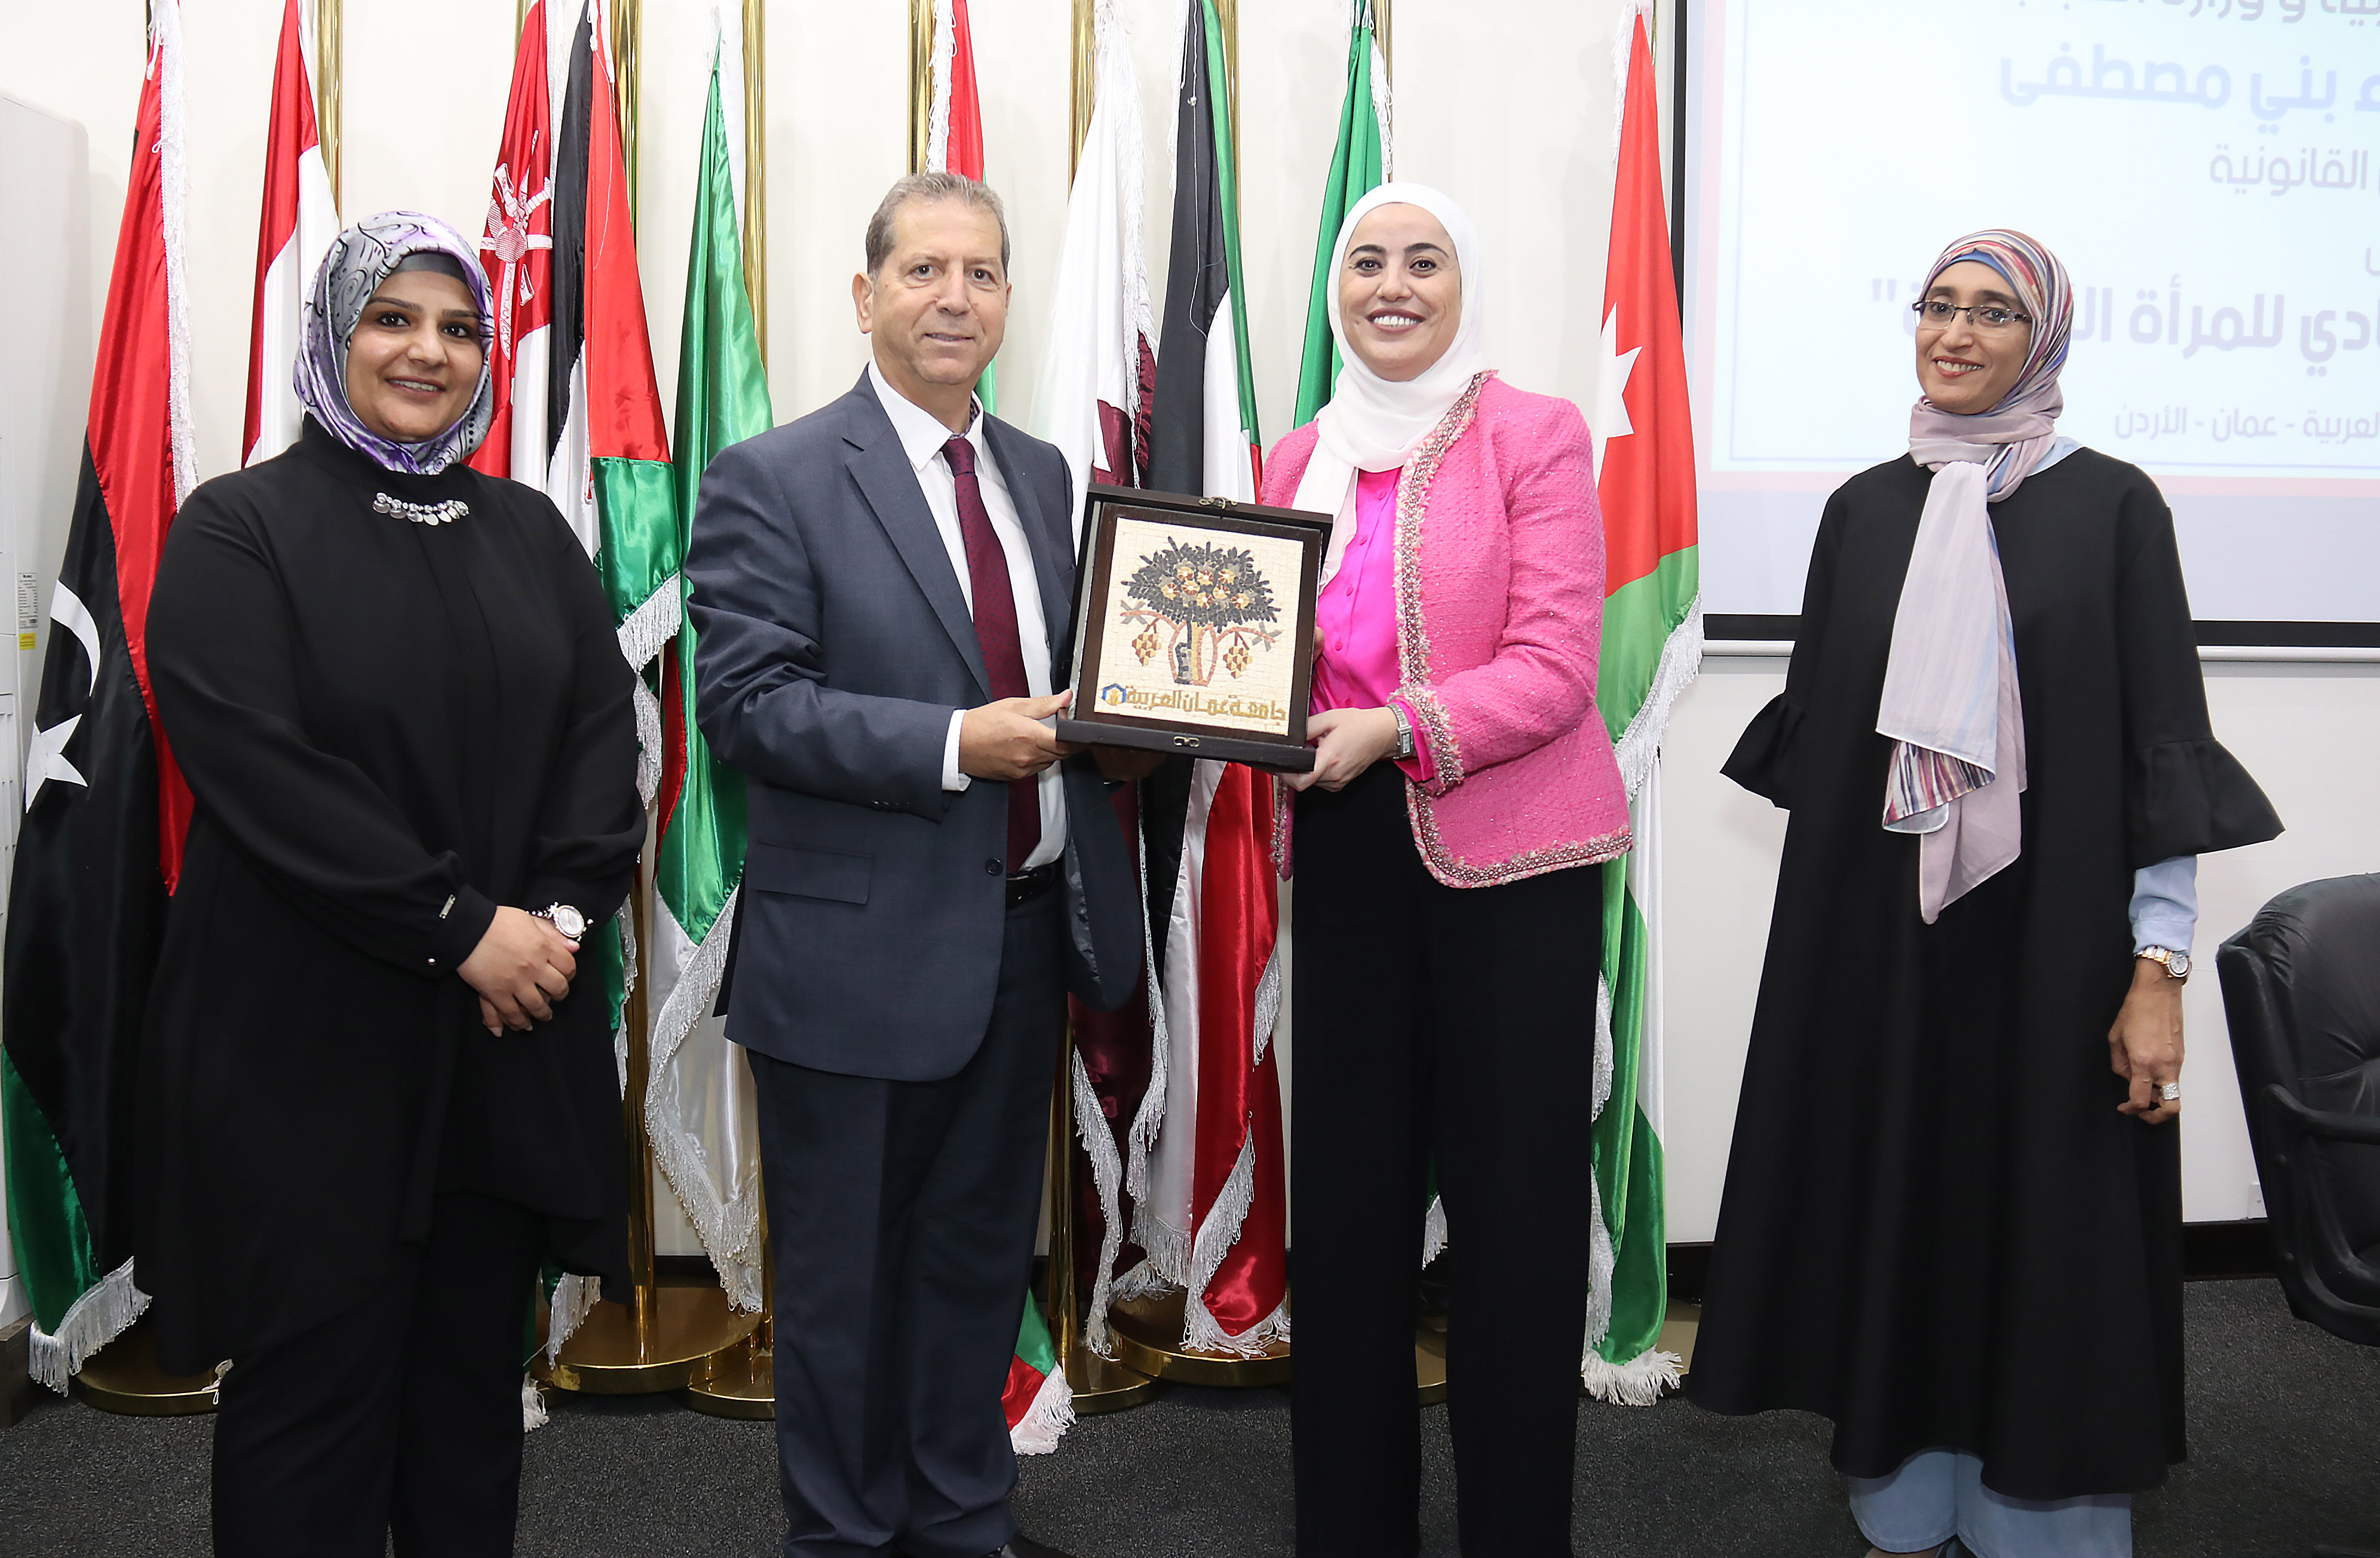 ندوة "التمكين السياسي والقيادي للمرأة الأردنية" في عمان العربية